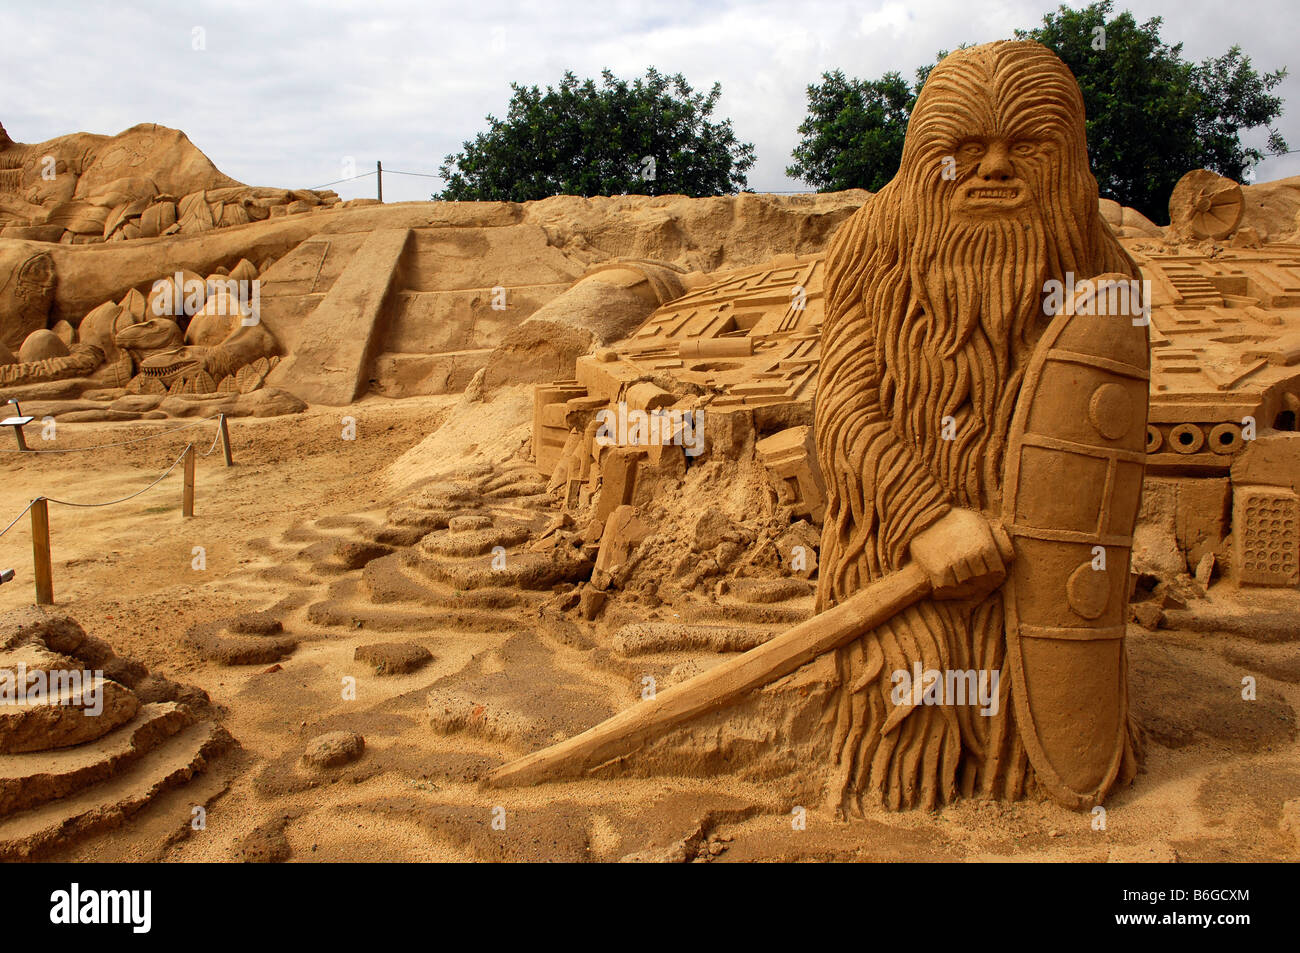 chewbacca star wars character fiesa sand festival sculpture art ...